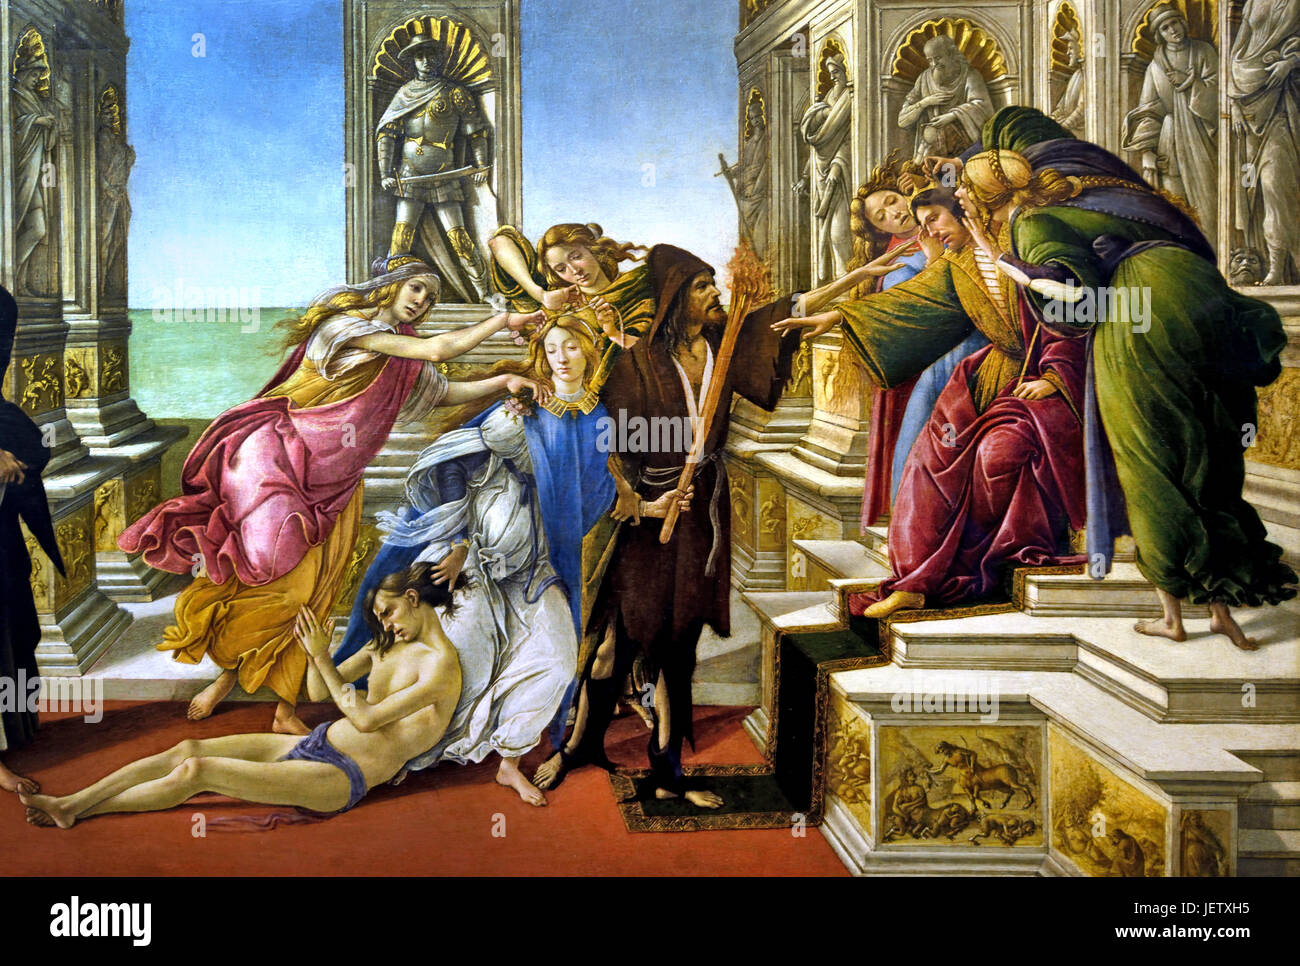 Calunnia di Apelle, che è 1495 Sandro Botticelli ( Alessandro di Mariano Filipepi ) 1445-1510 Firenze pittore italiano di scuola fiorentina del primo Rinascimento. (Botticelli fatto questo dipinto sulla descrizione di un dipinto di Apelle, che è un pittore greco del periodo ellenistico. Apelle, che è ) Foto Stock